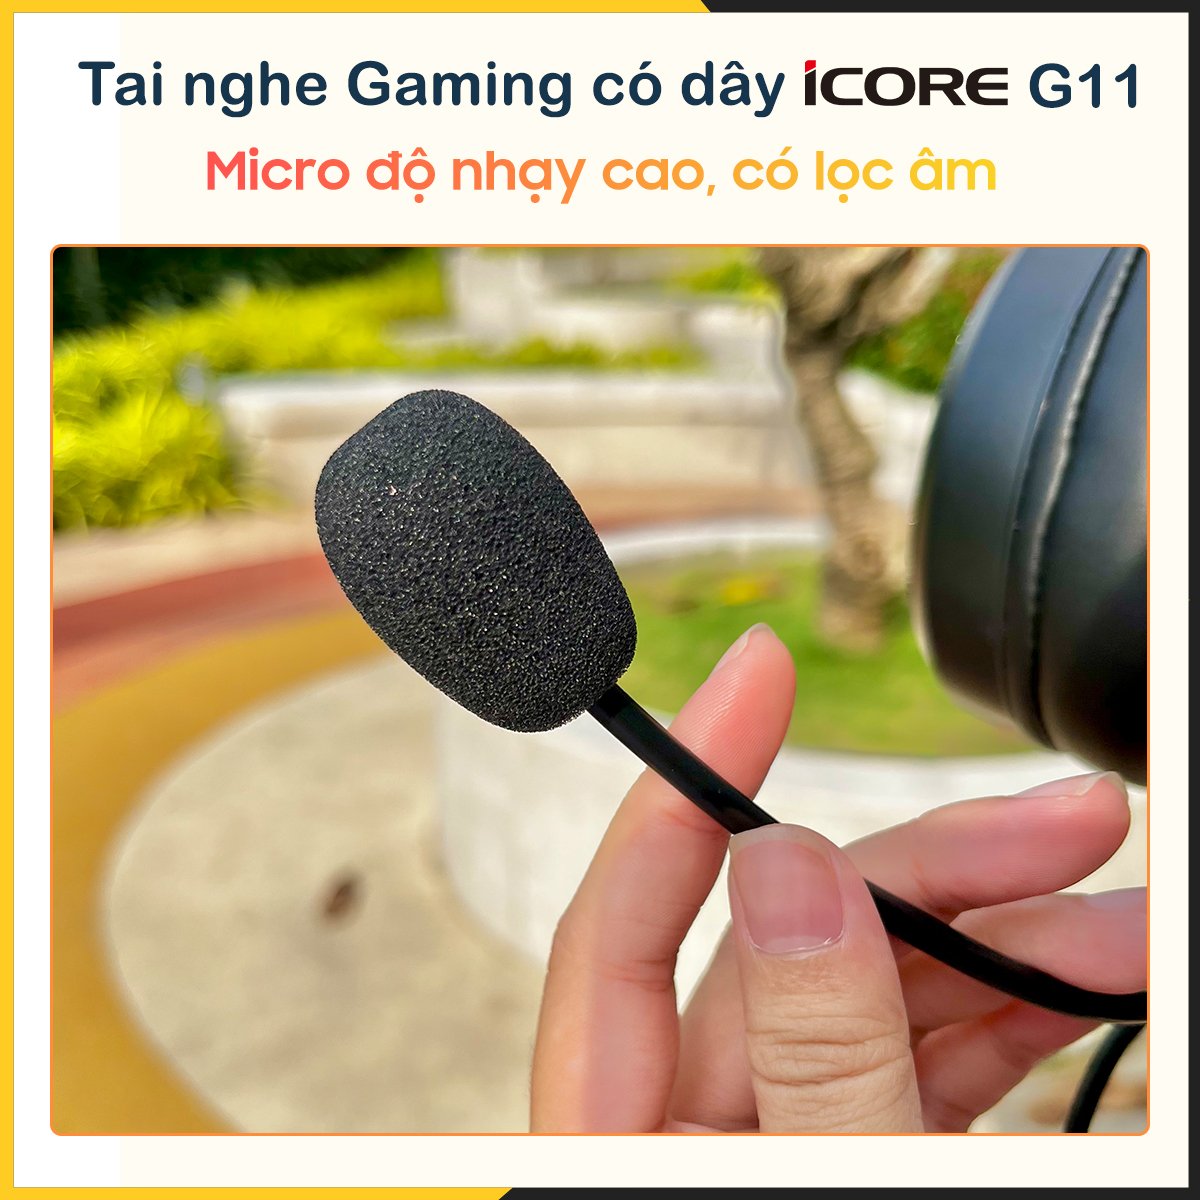 Tai nghe chụp tai Gaming có dây iCore G11 - Hàng Chính Hãng